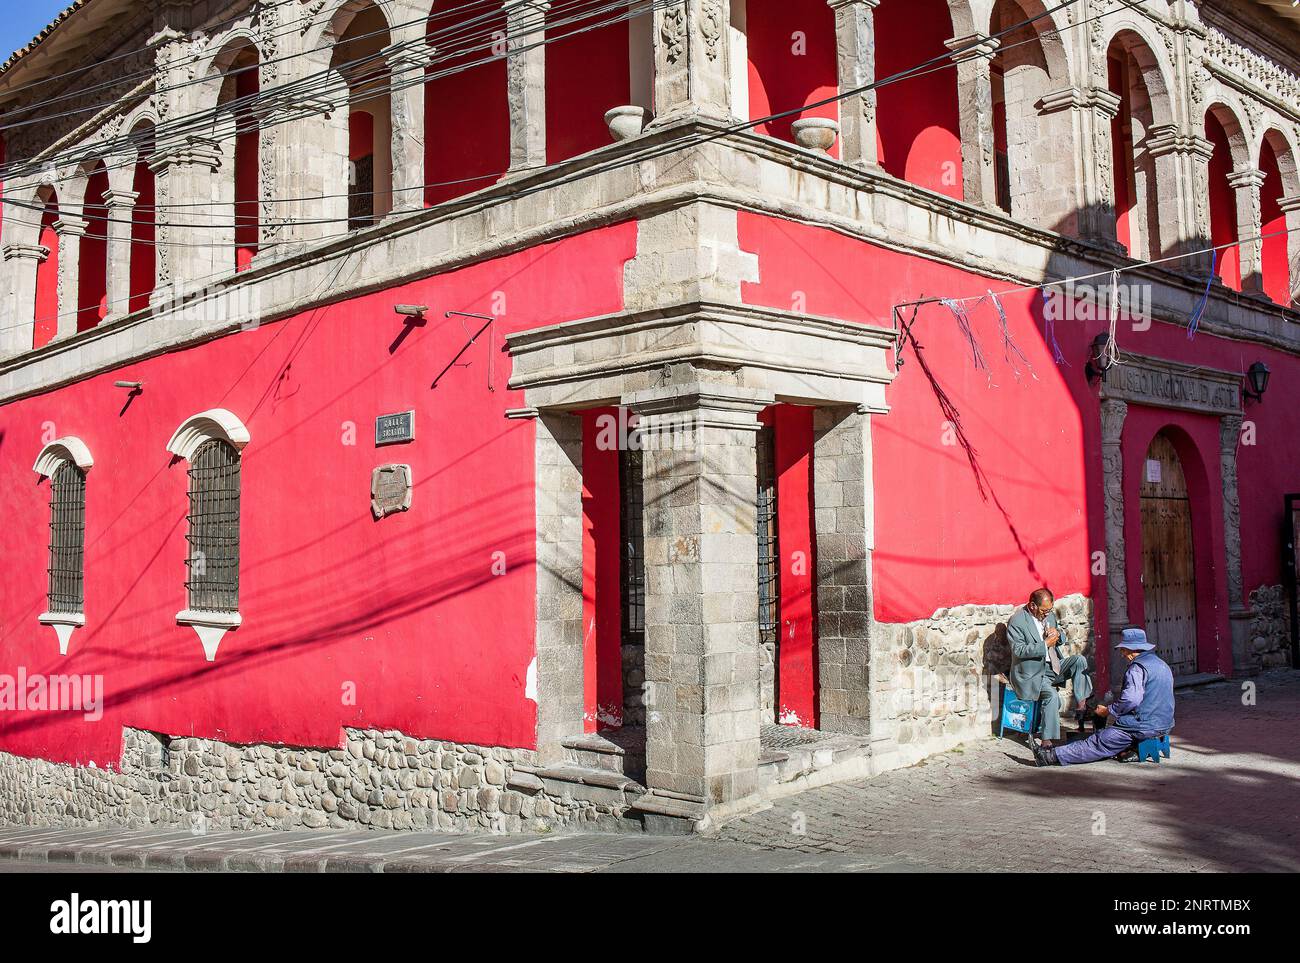 Facade of National Museum of Art, Casa de Francisco Tadeo Diez de Medina, La Paz, Bolivia Stock Photo